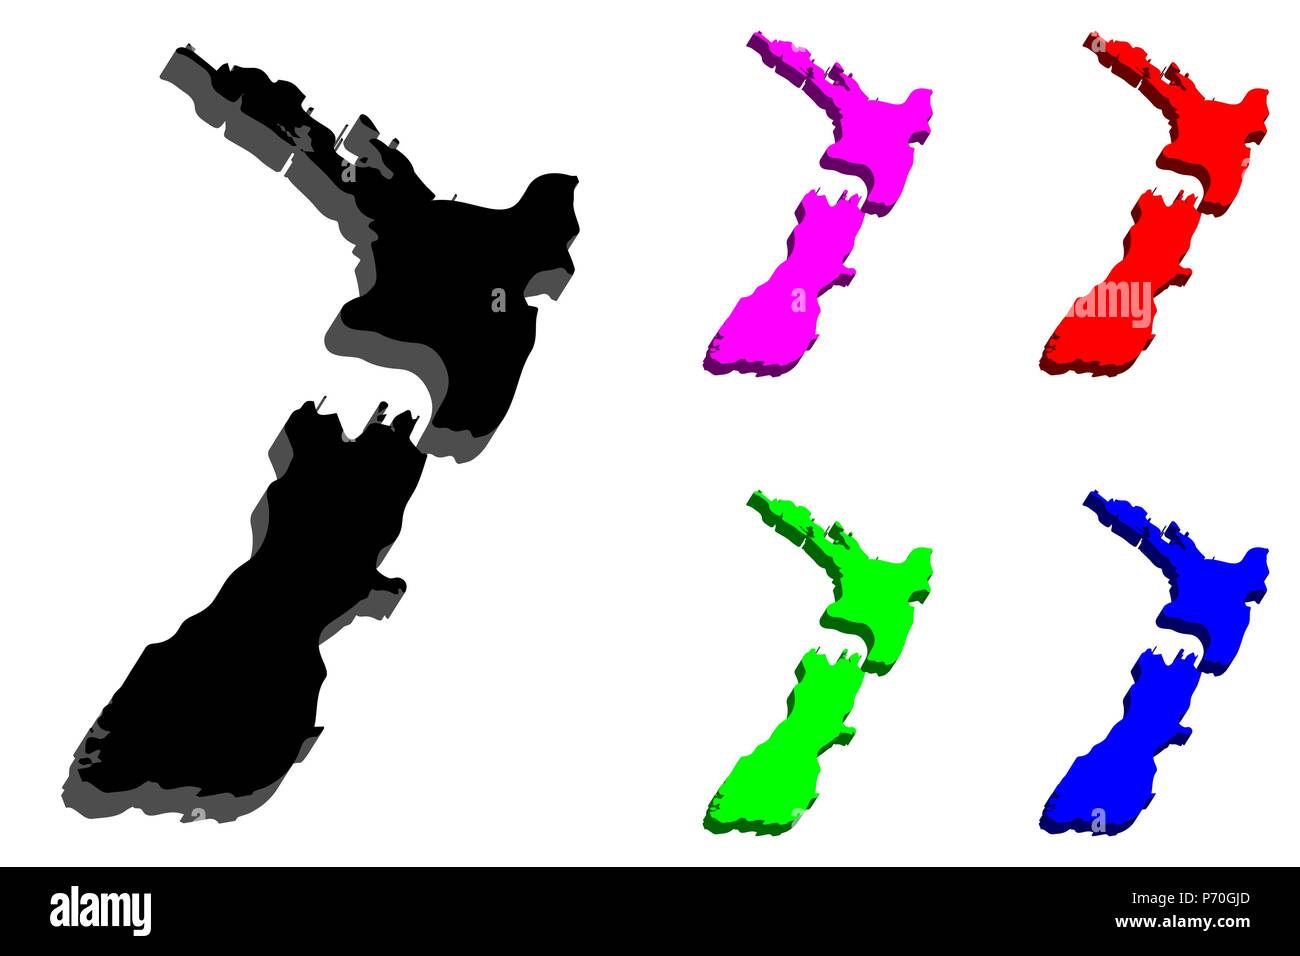 Carte 3D de la Nouvelle-Zélande Aotearoa () - noir, rouge, violet, bleu et vert - vector illustration Illustration de Vecteur